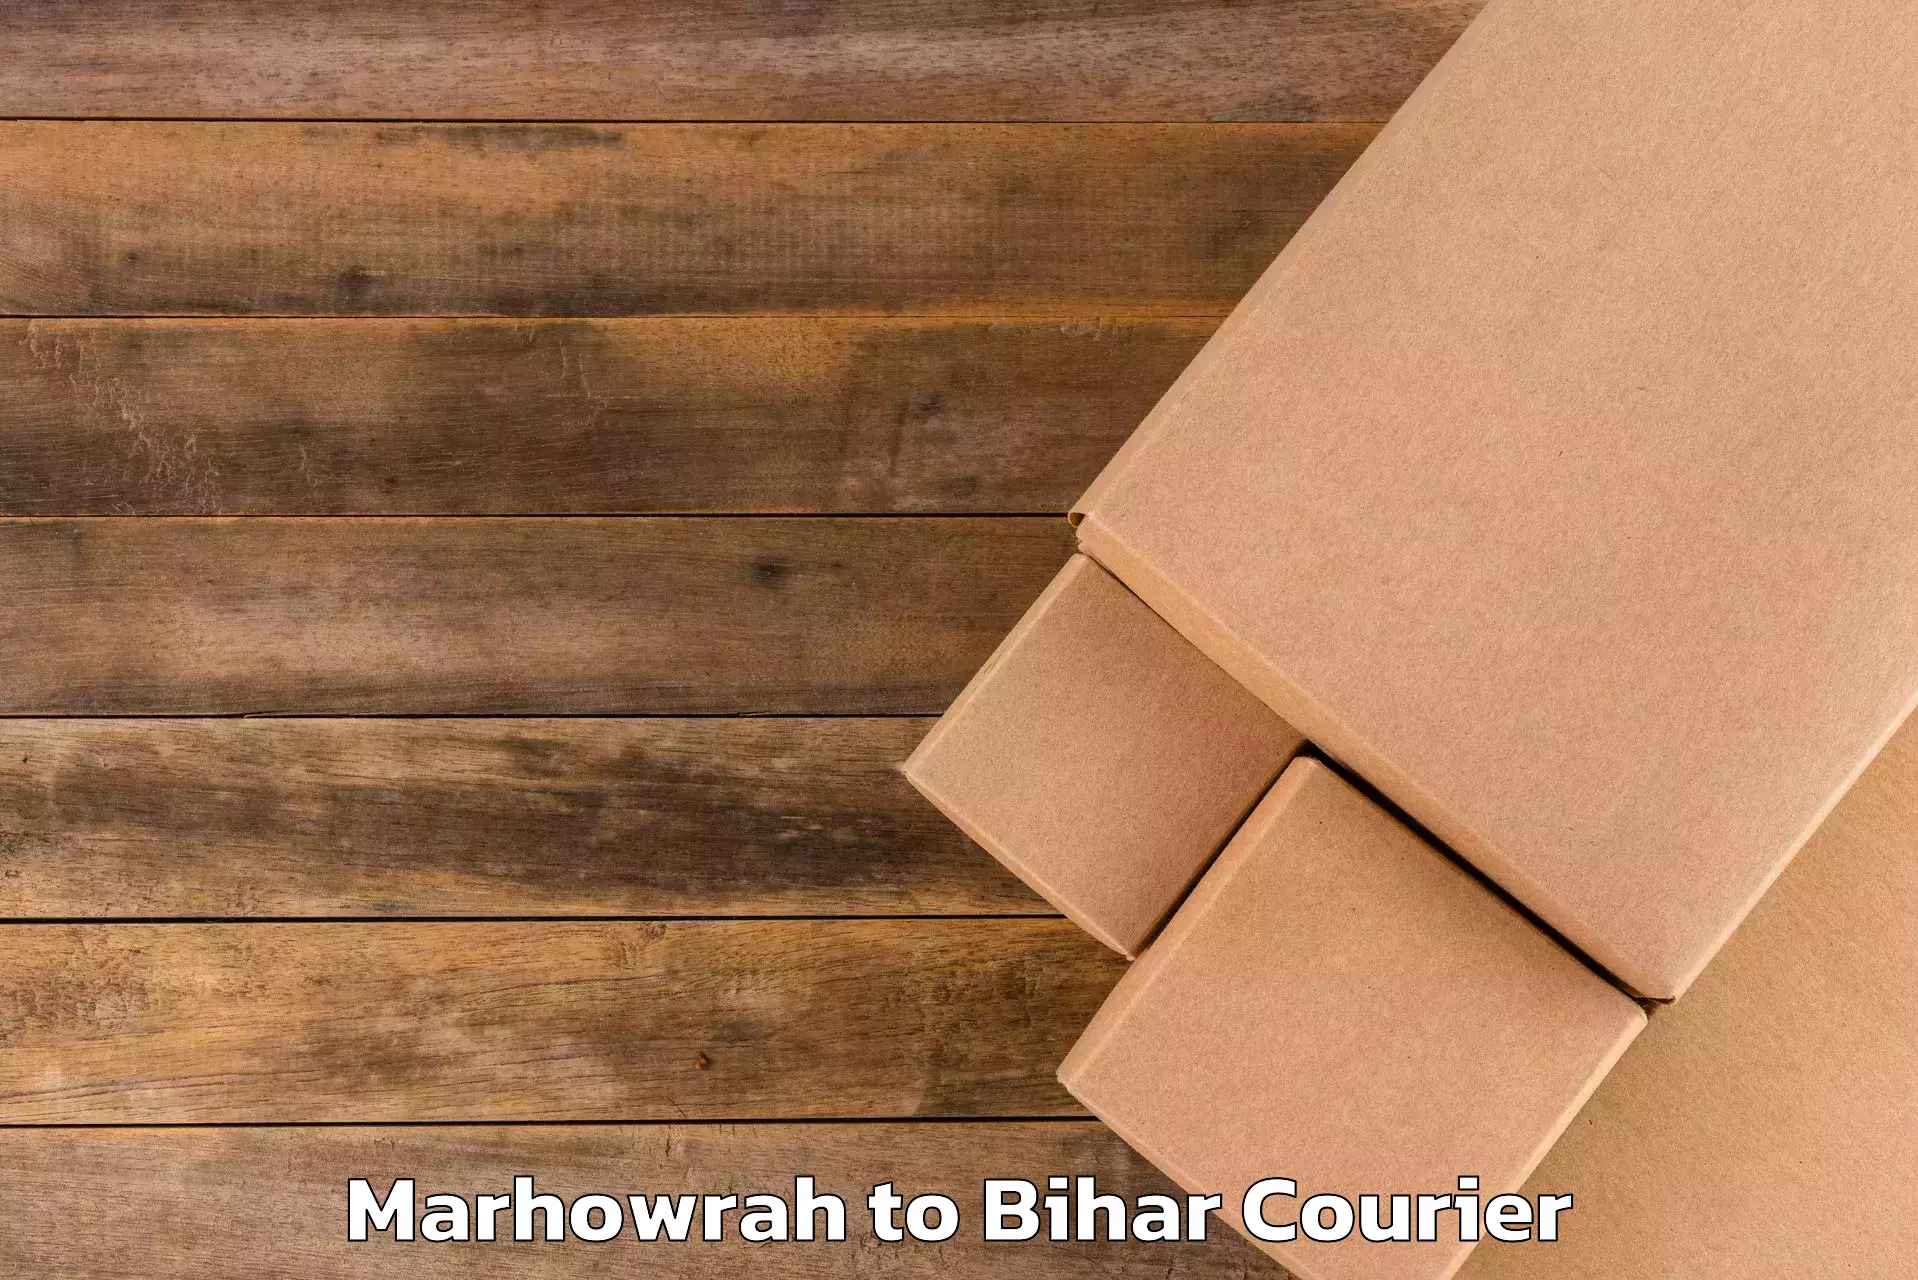 Luggage delivery network Marhowrah to Malmaliya